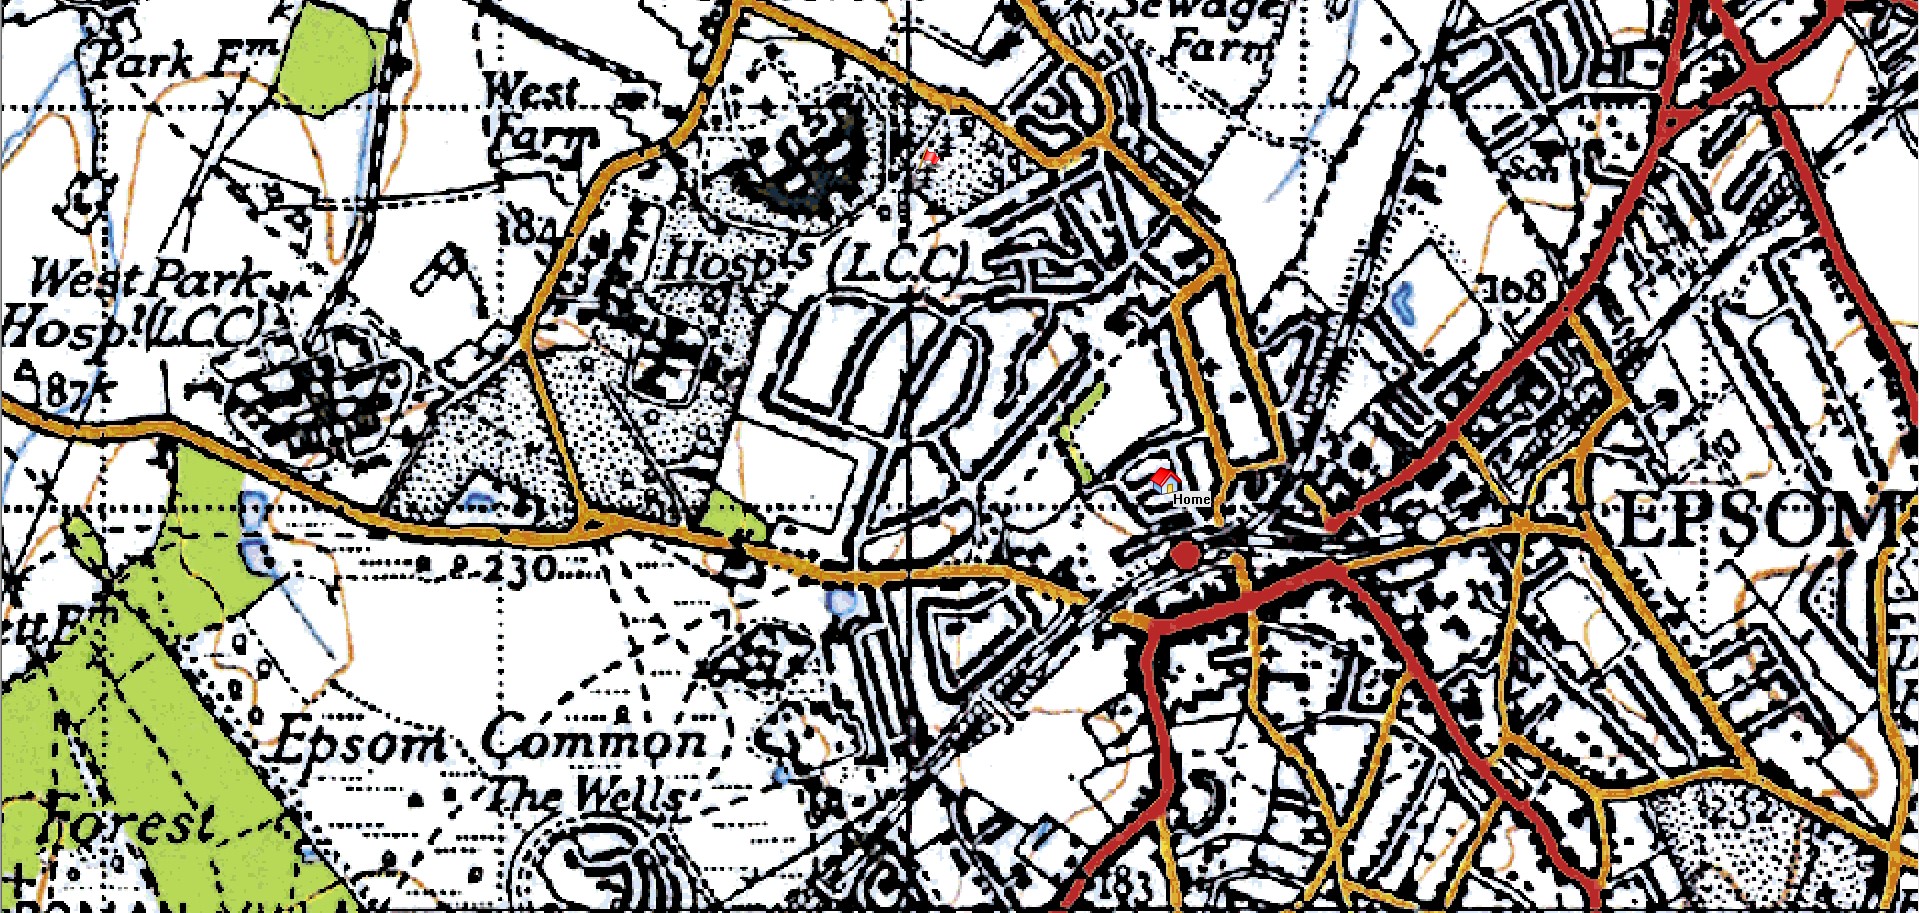 Map 1940s Epsom Court